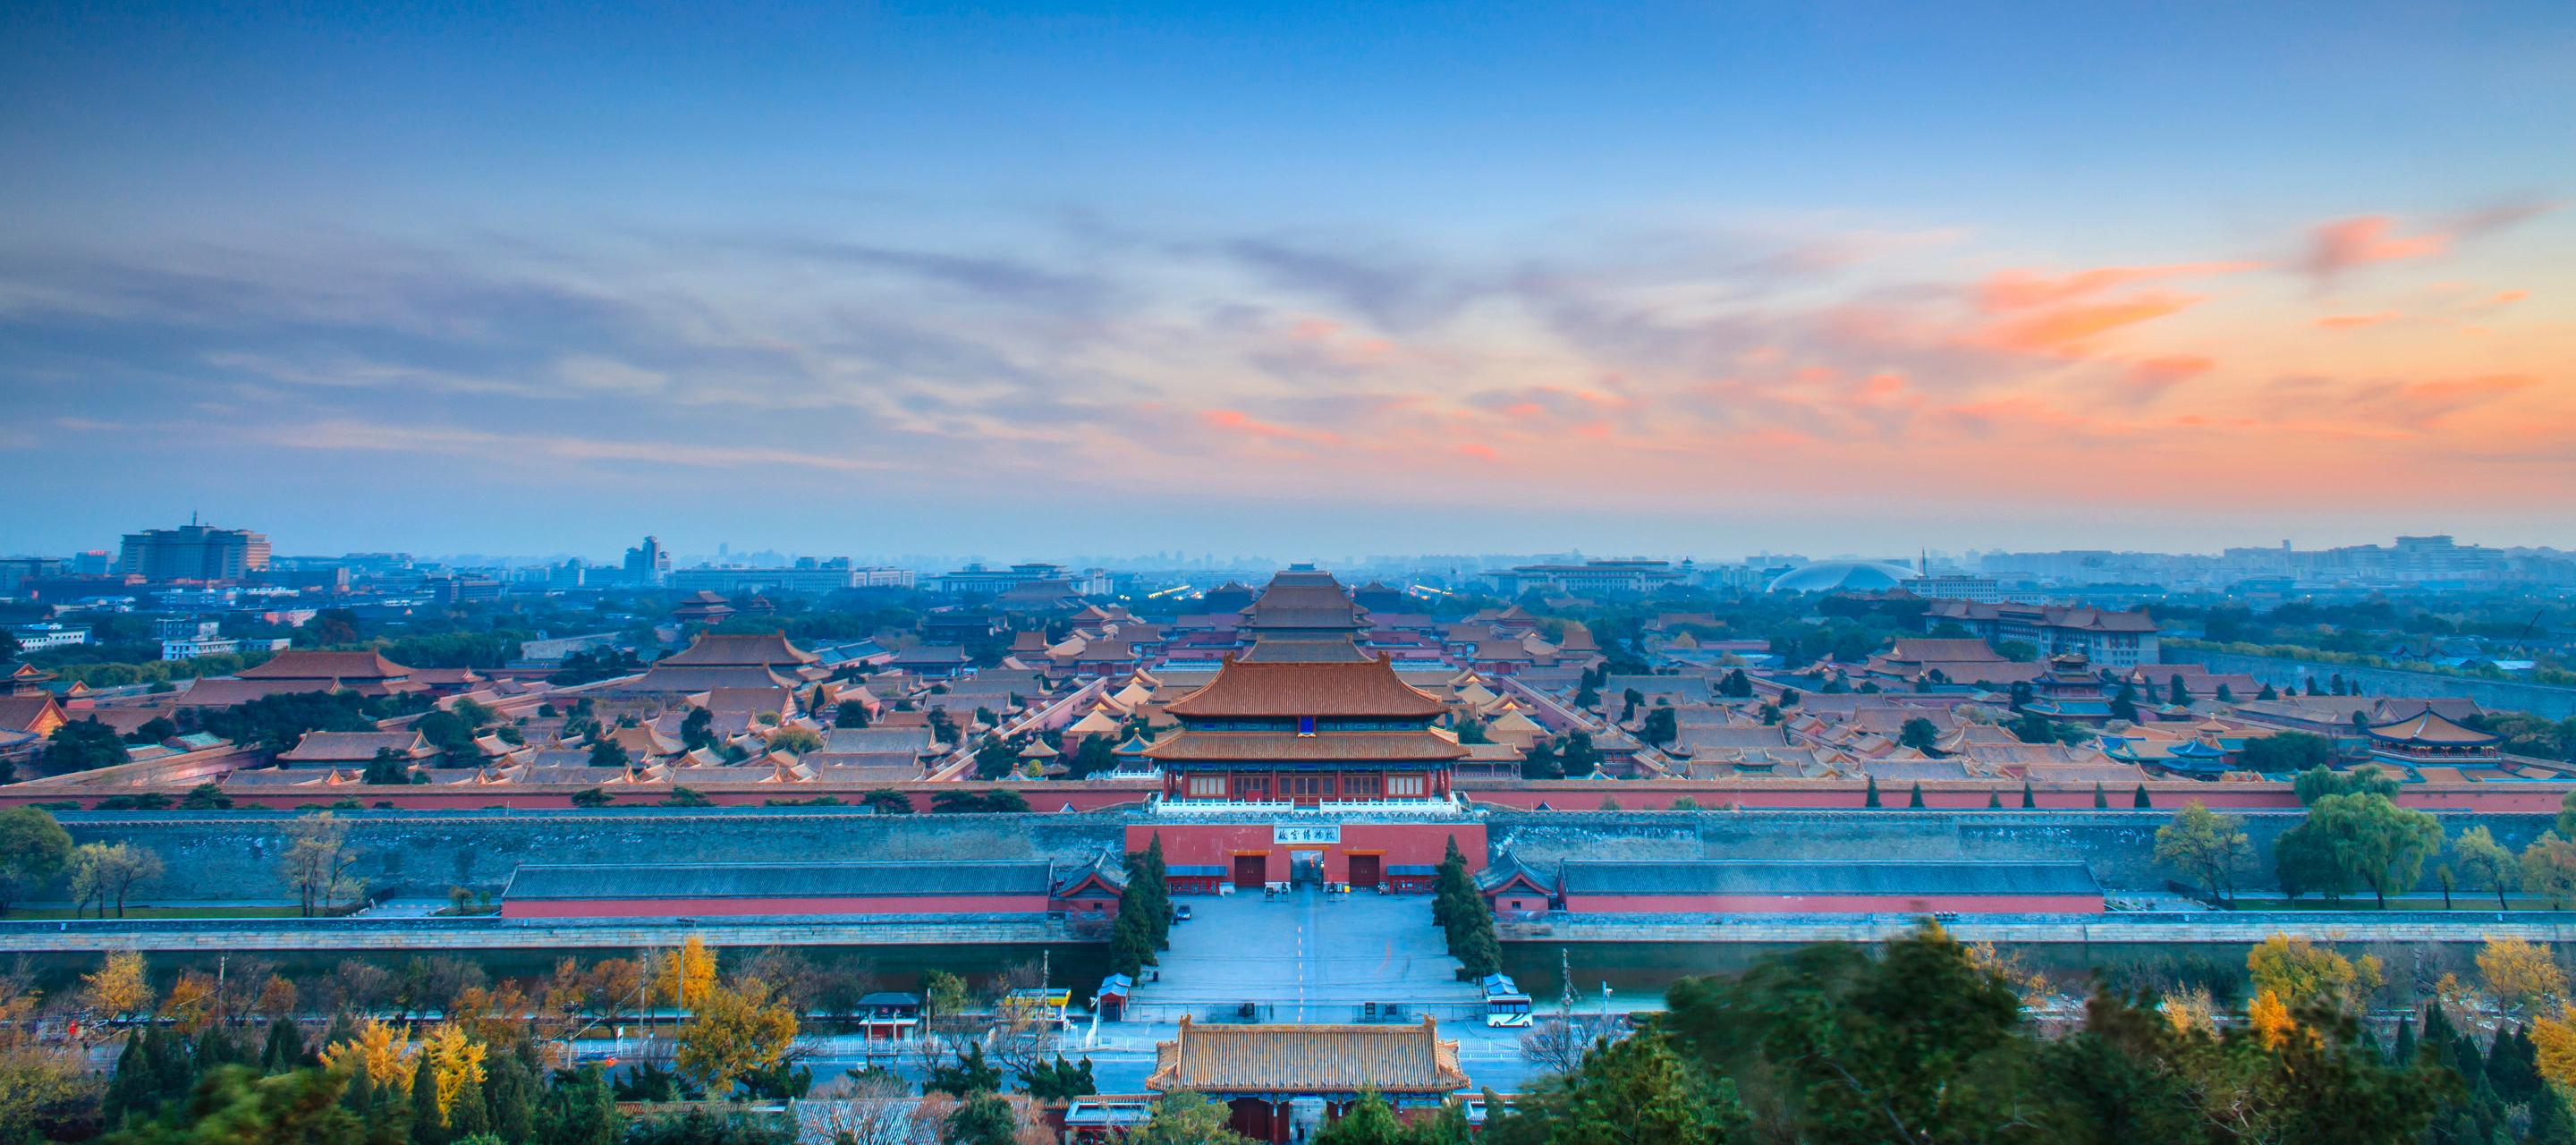 Mandarin Oriental’s first Beijing hotel is set to open in early 2019